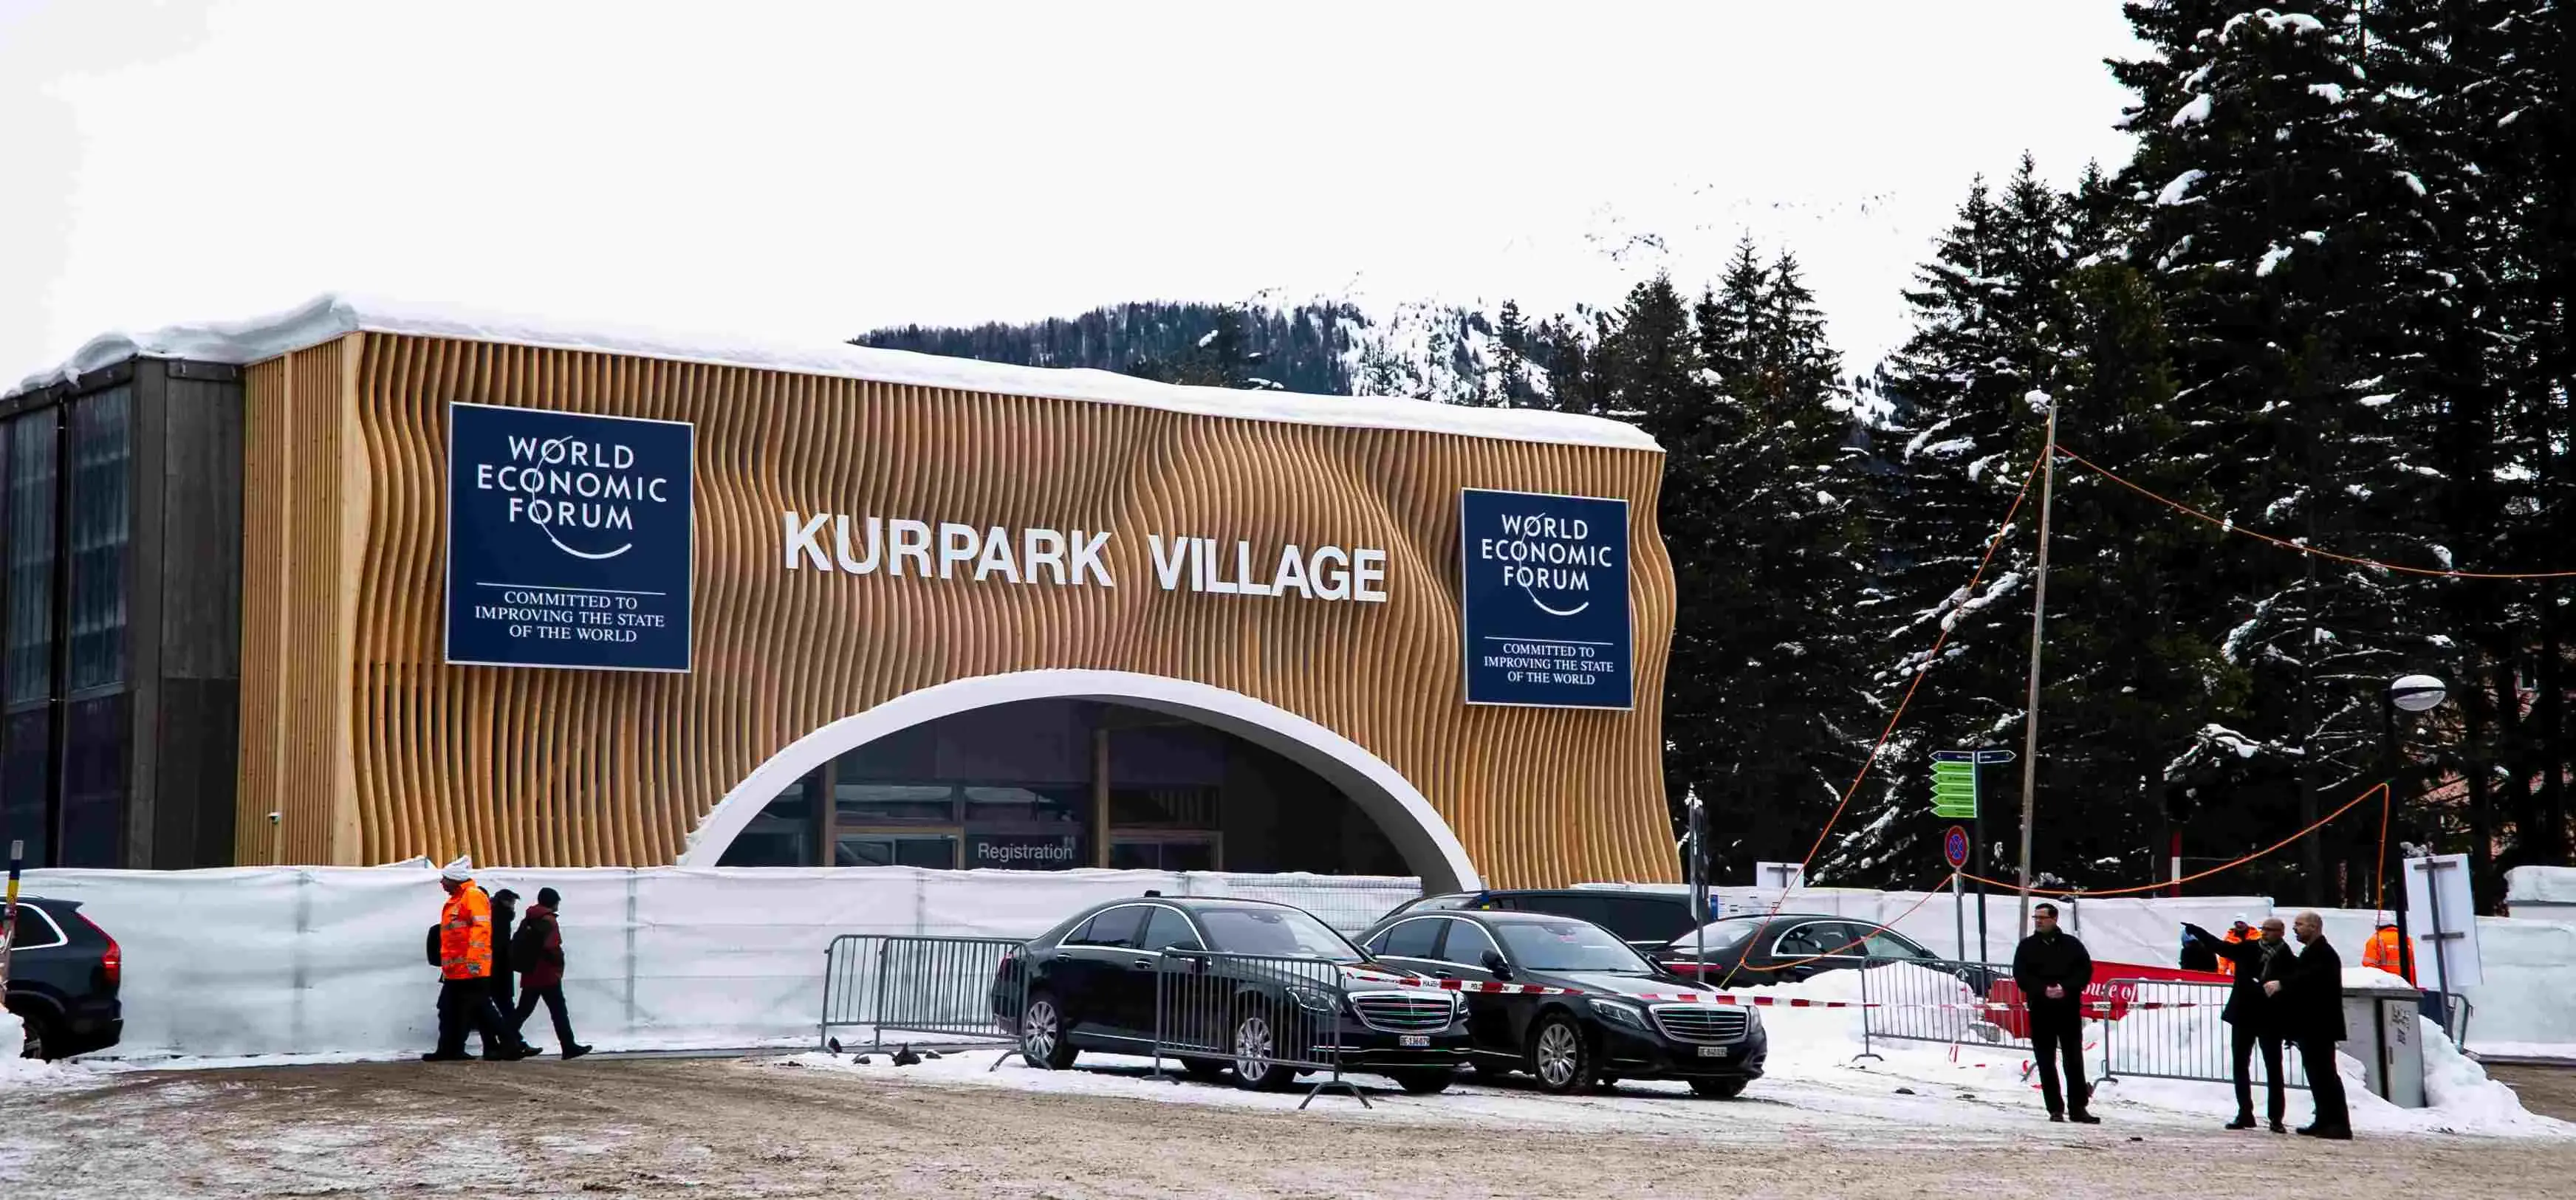 Entrada del Kurpark Village